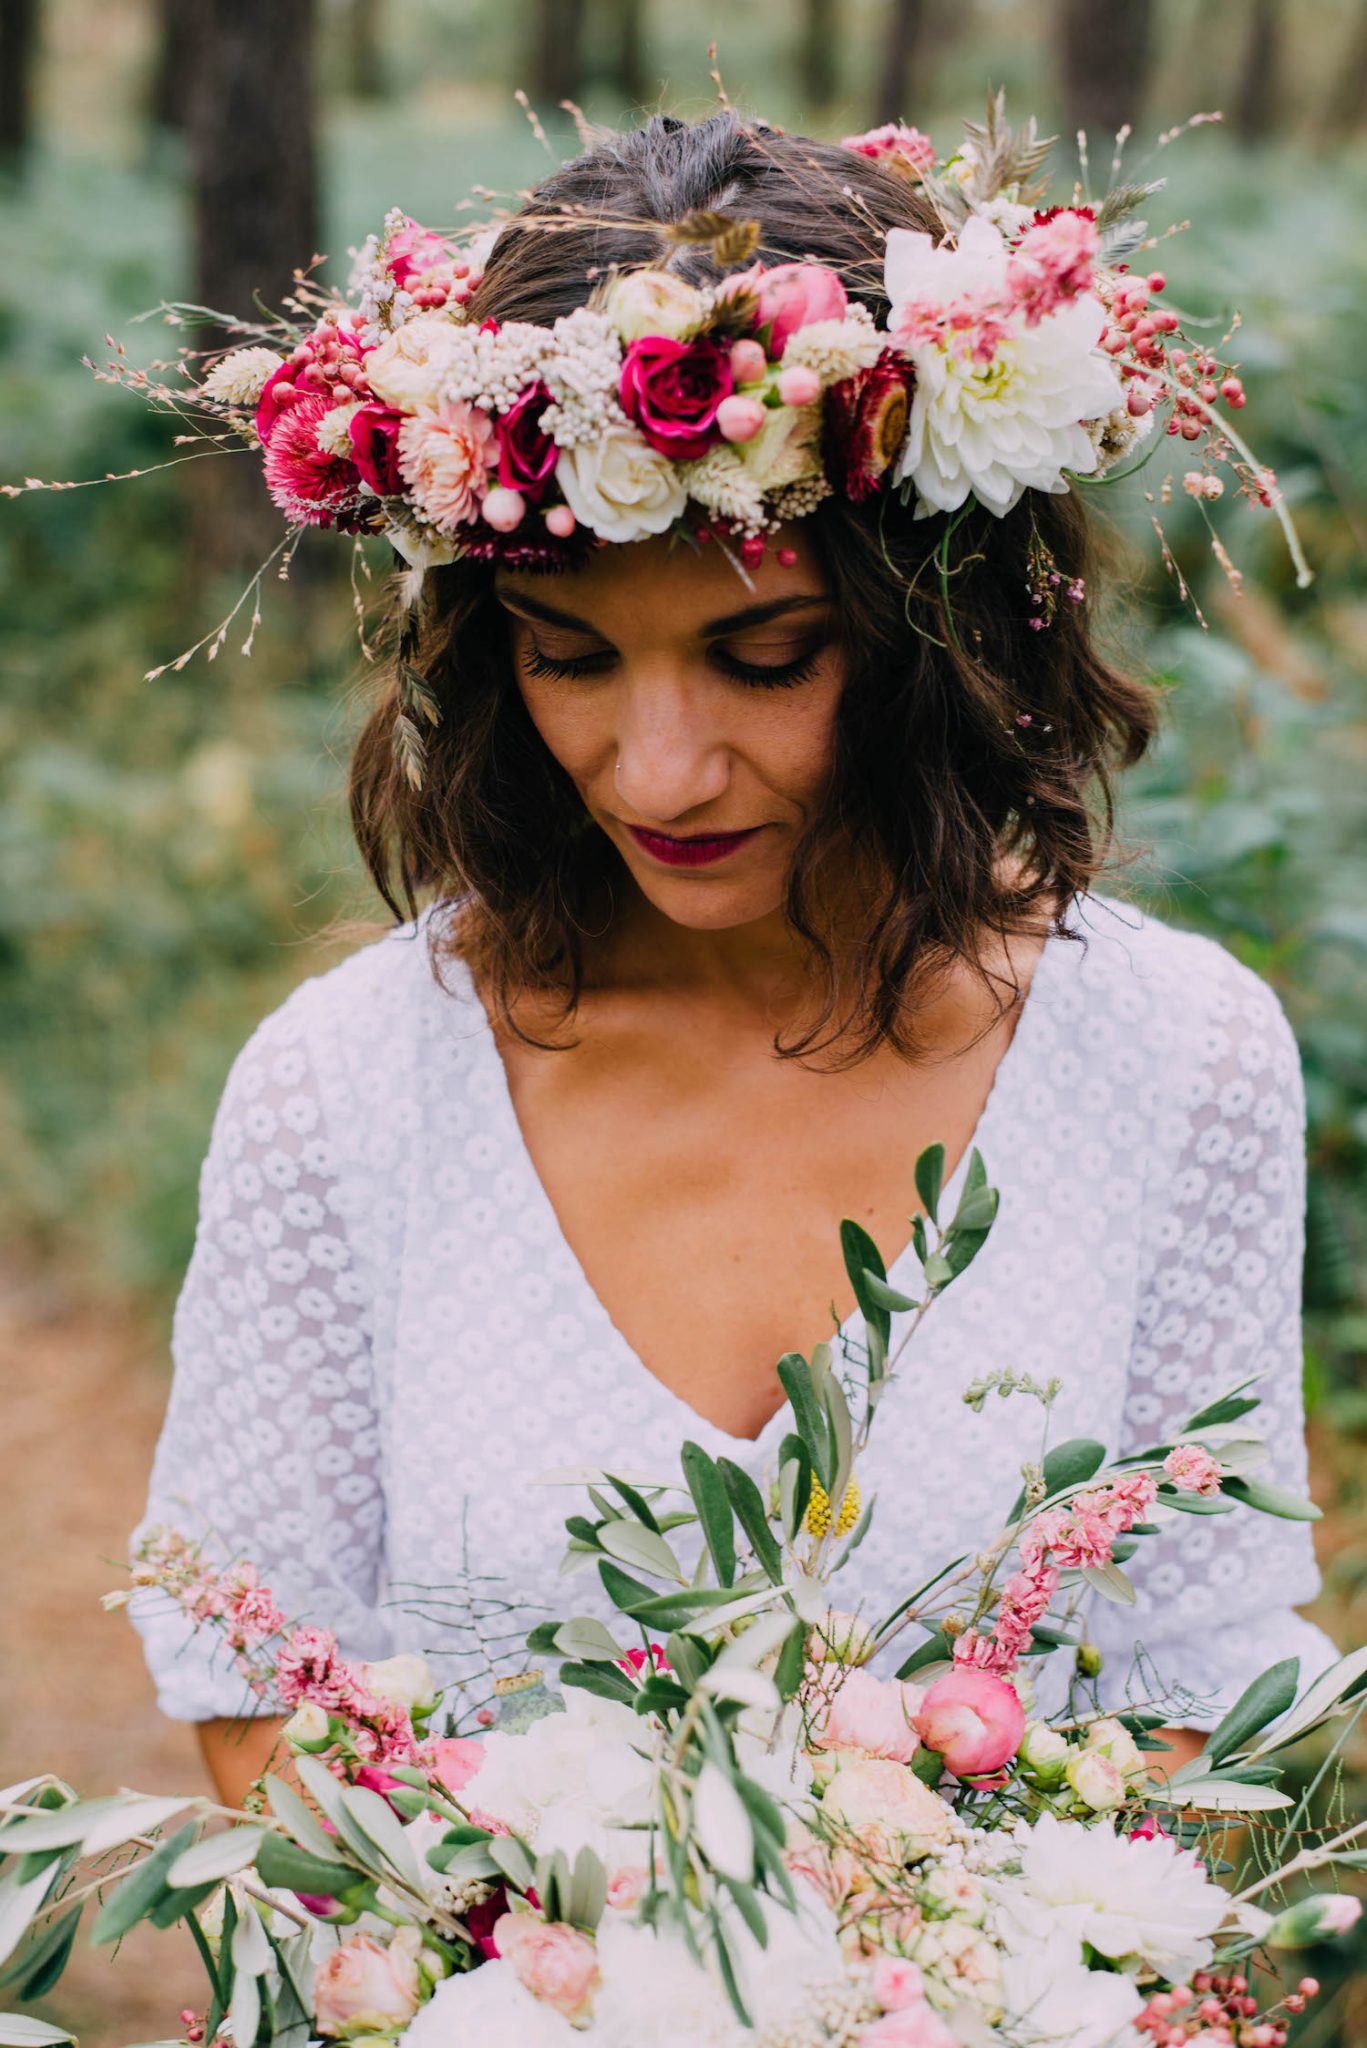 Réussir la décoration florale de son mariage - Blog Mariage Madame C